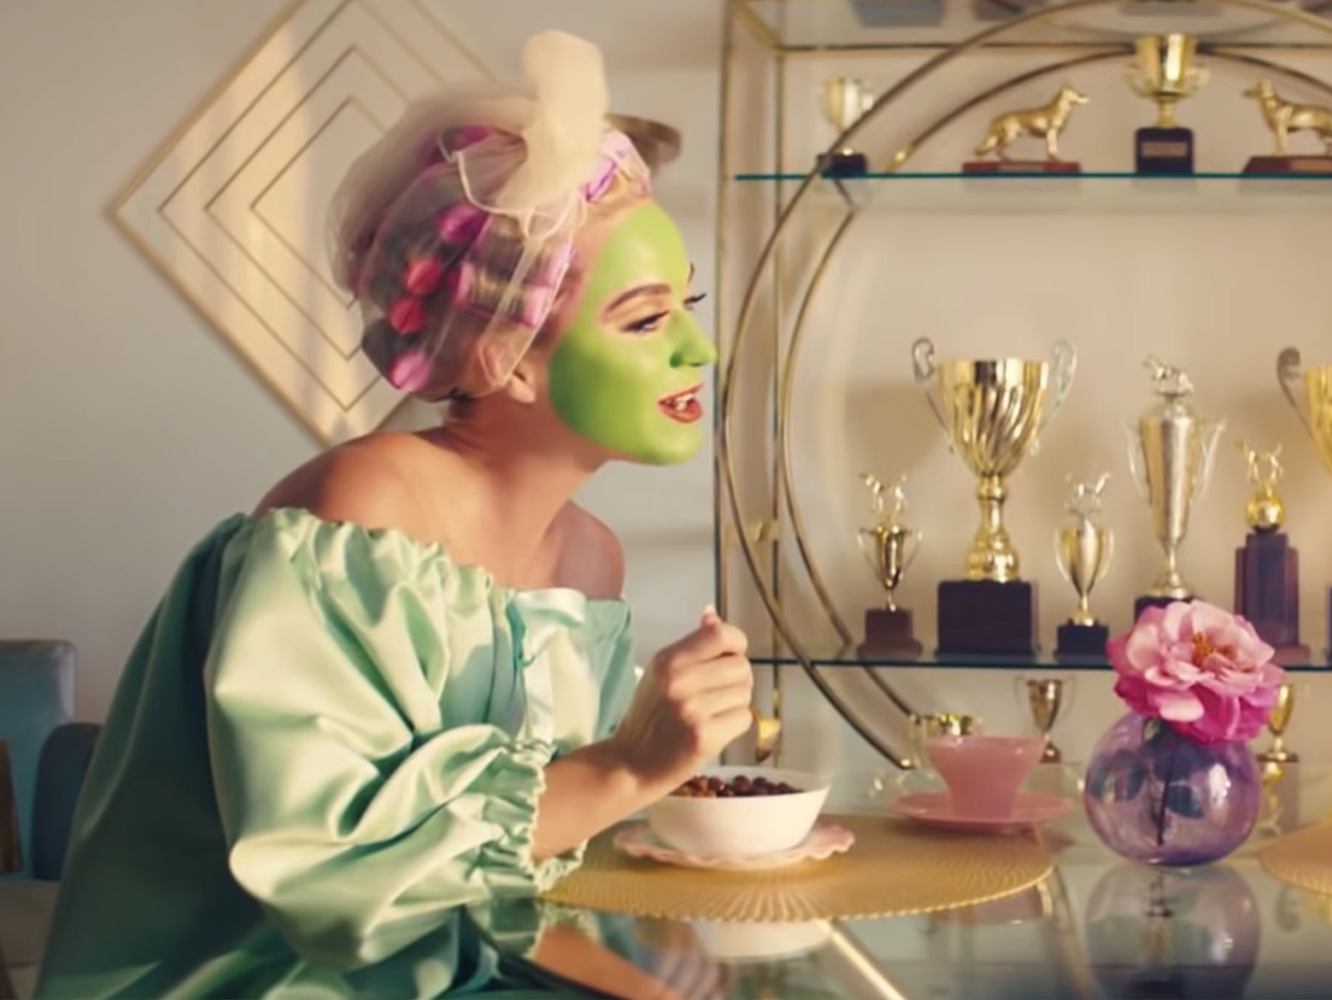  El vídeo de Katy Perry para ‘Small Talk’ tiene perritos pero es bastante peor que el lyric video